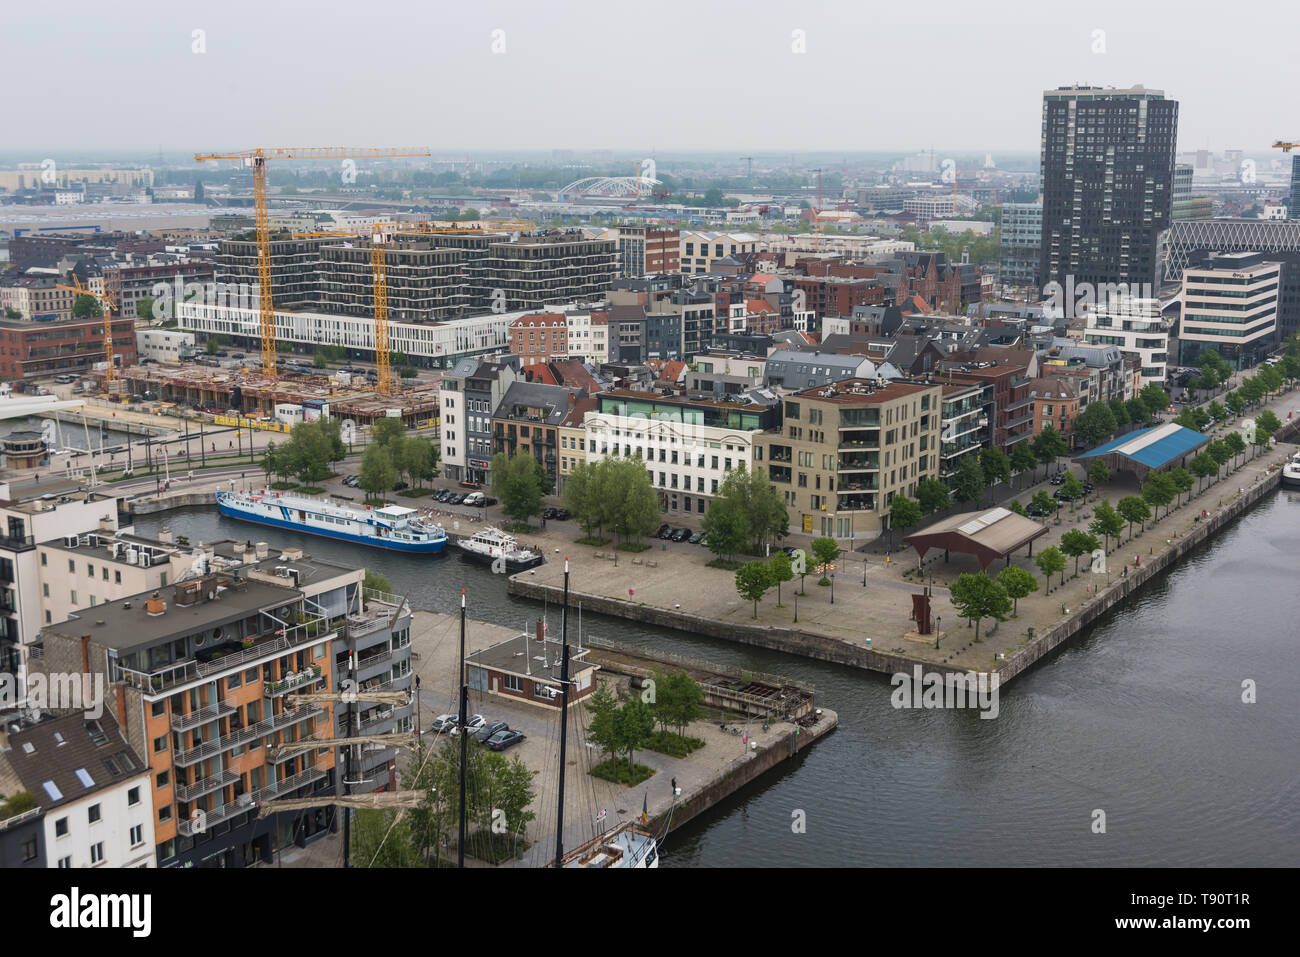 Antwerpen, Hafen - Antwerp, Harbour Stock Photo